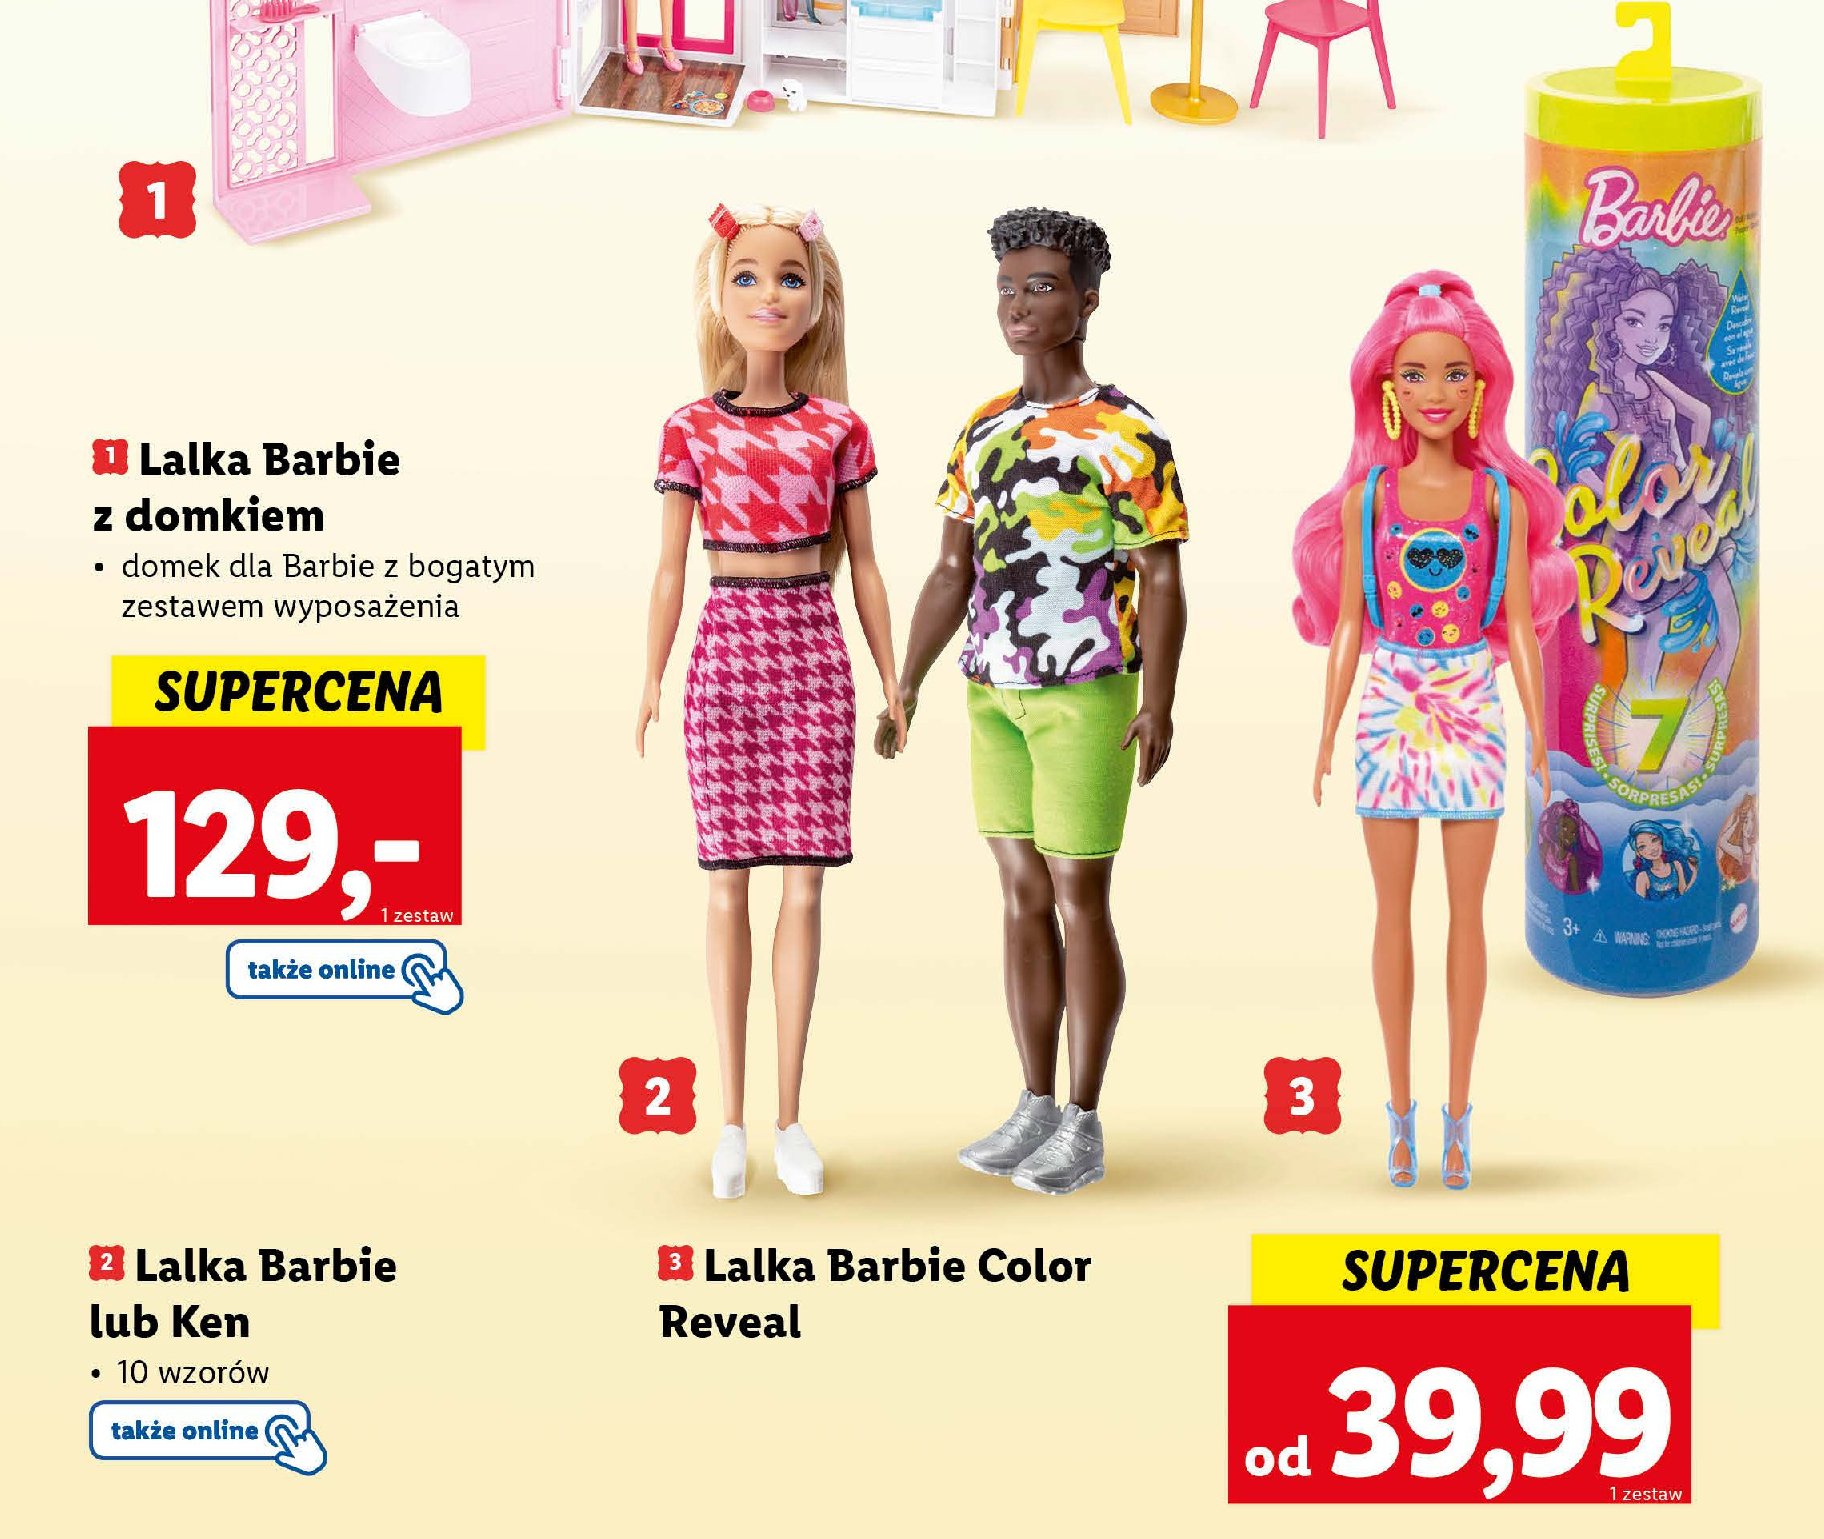 Ken Barbie promocja